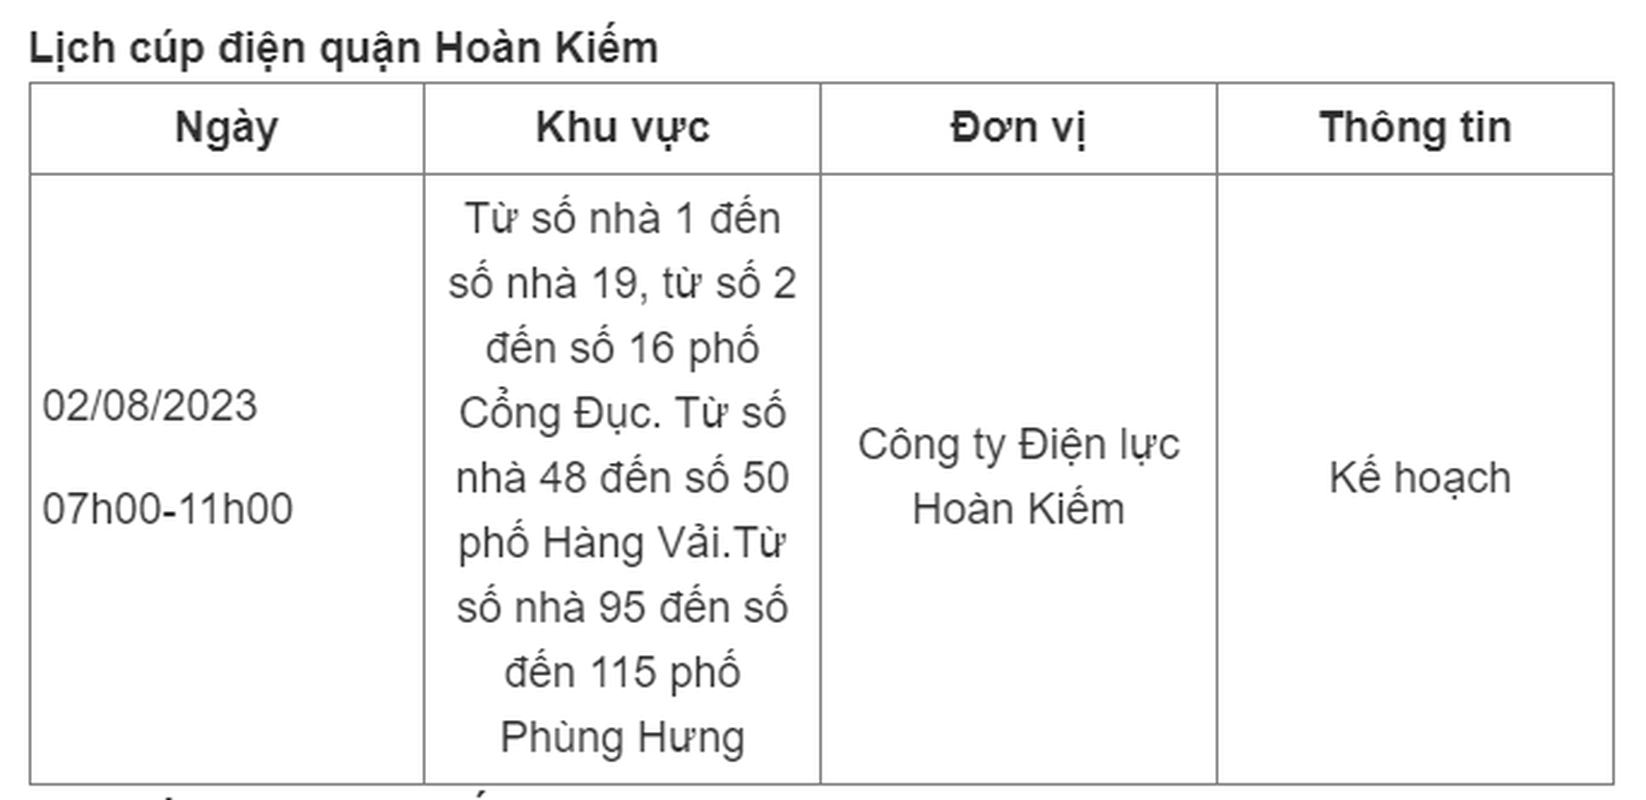 Lich cup dien Ha Noi hom nay 2/8: 3 quan noi thanh nam trong ke hoach-Hinh-2